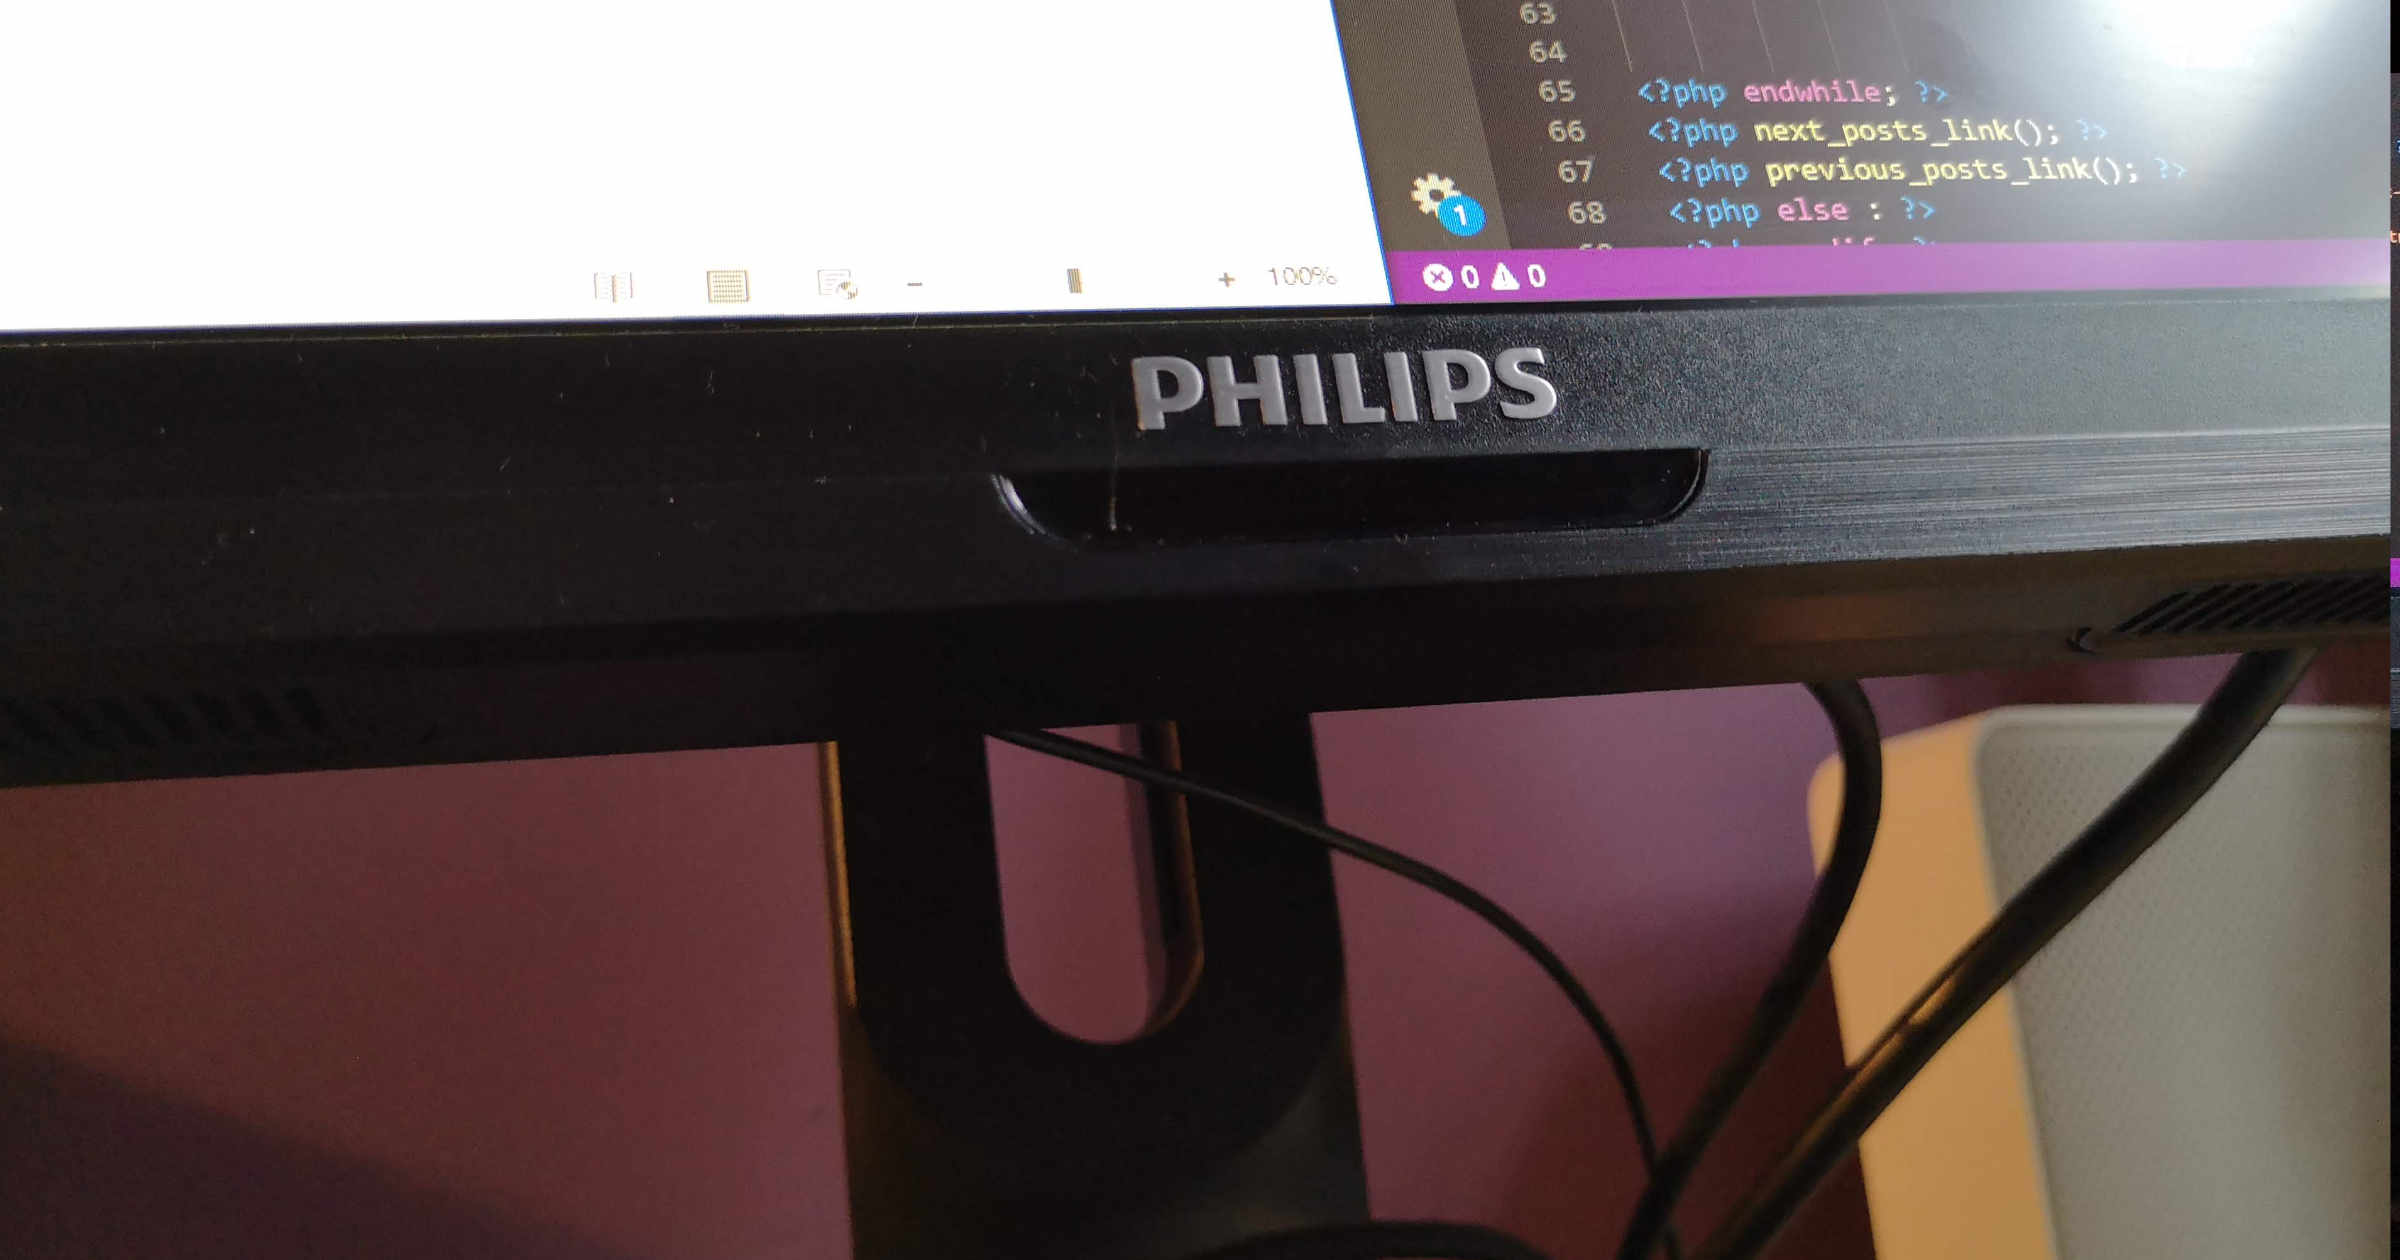 [PL] Recenzja monitora Philips Brilliance 272b – WQHD do biurowego użytku